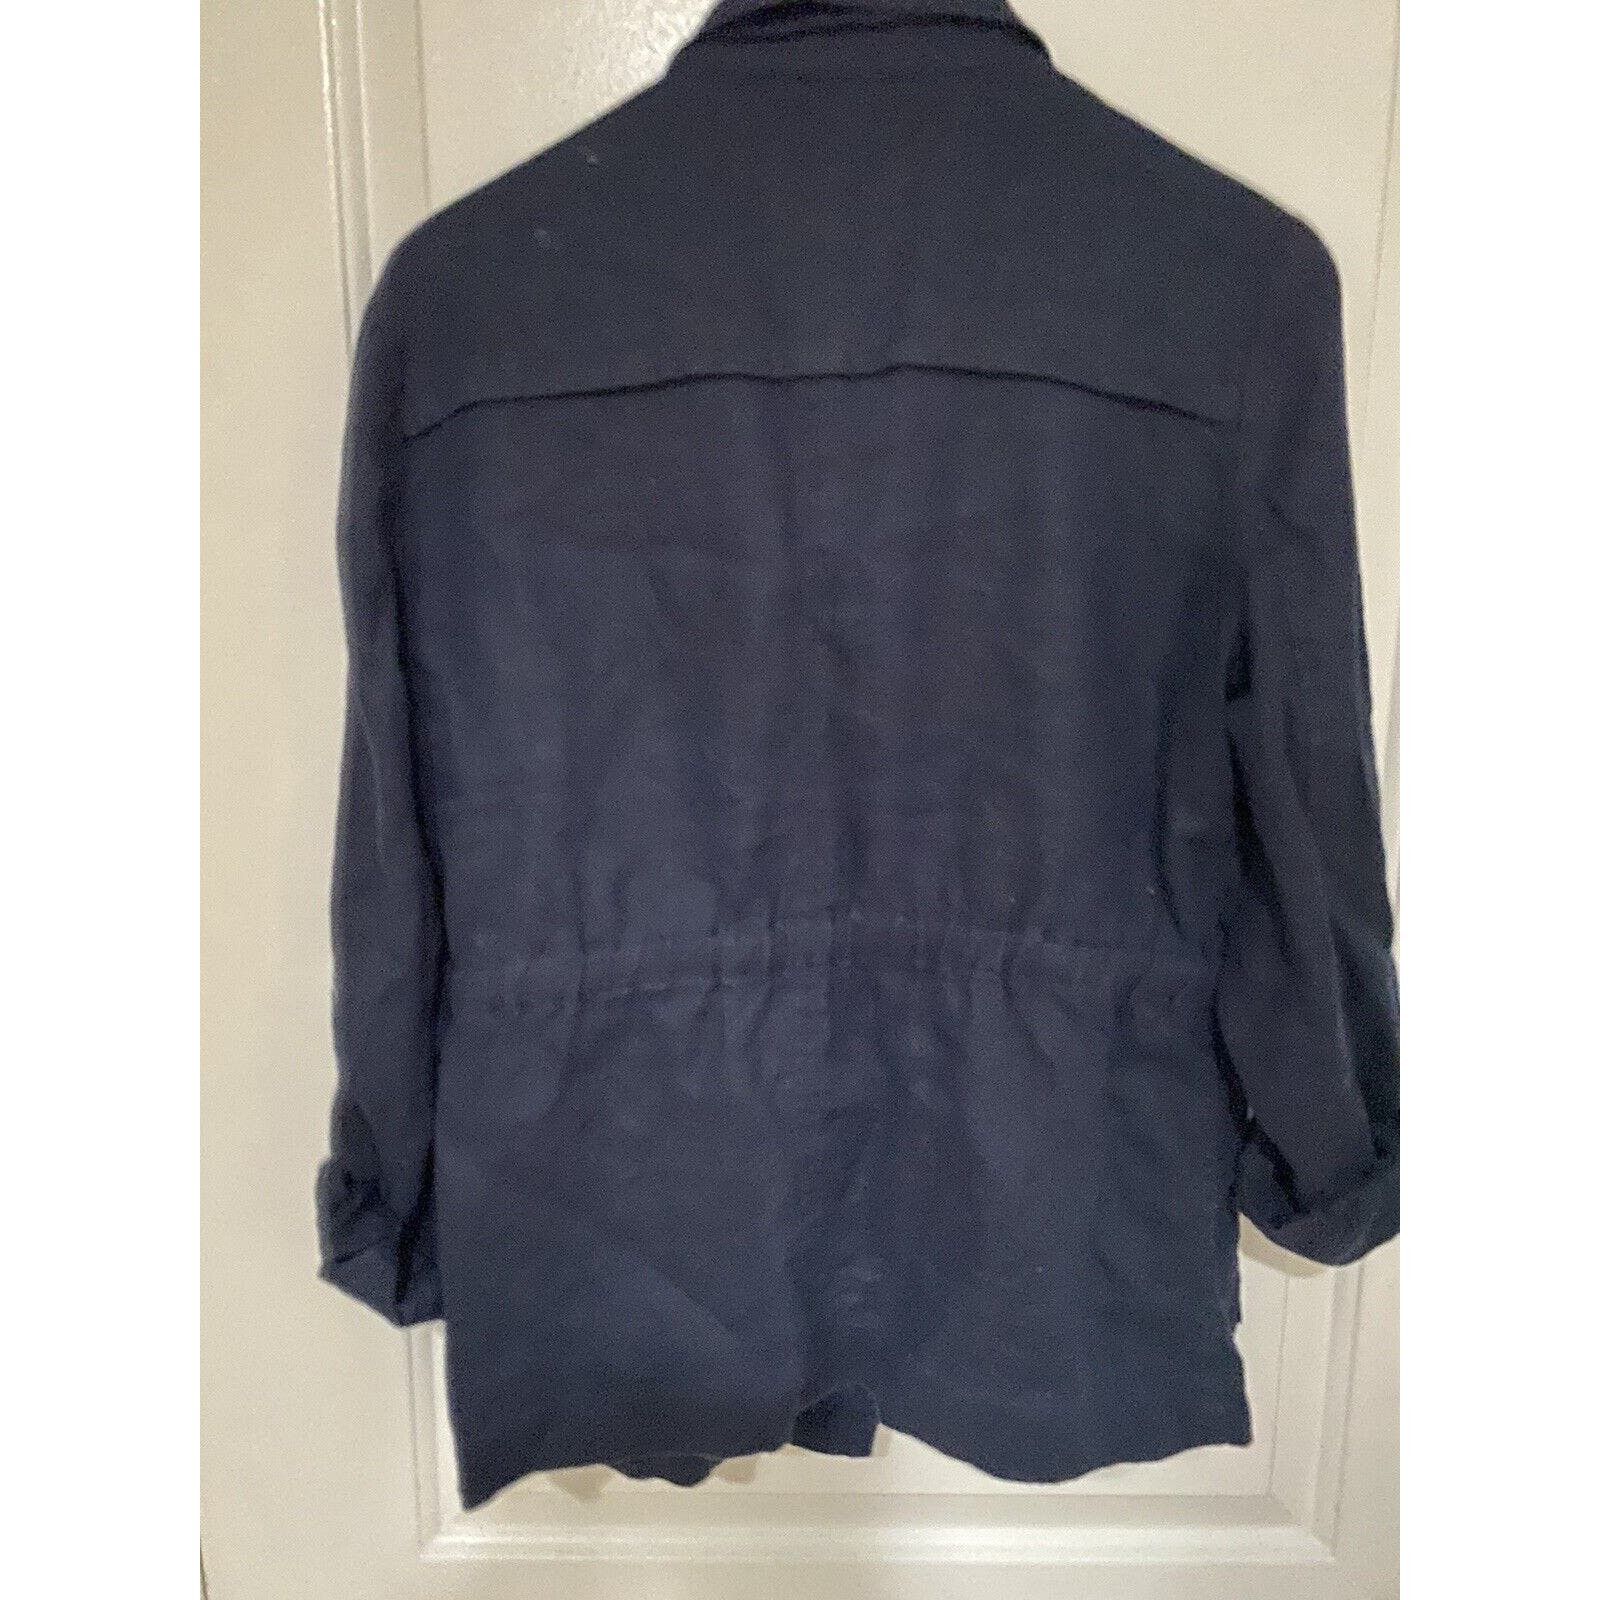 Inc INC Concepts Jacket Women Sz Med Button Up Coat Blue Linen Size M / US 6-8 / IT 42-44 - 6 Thumbnail